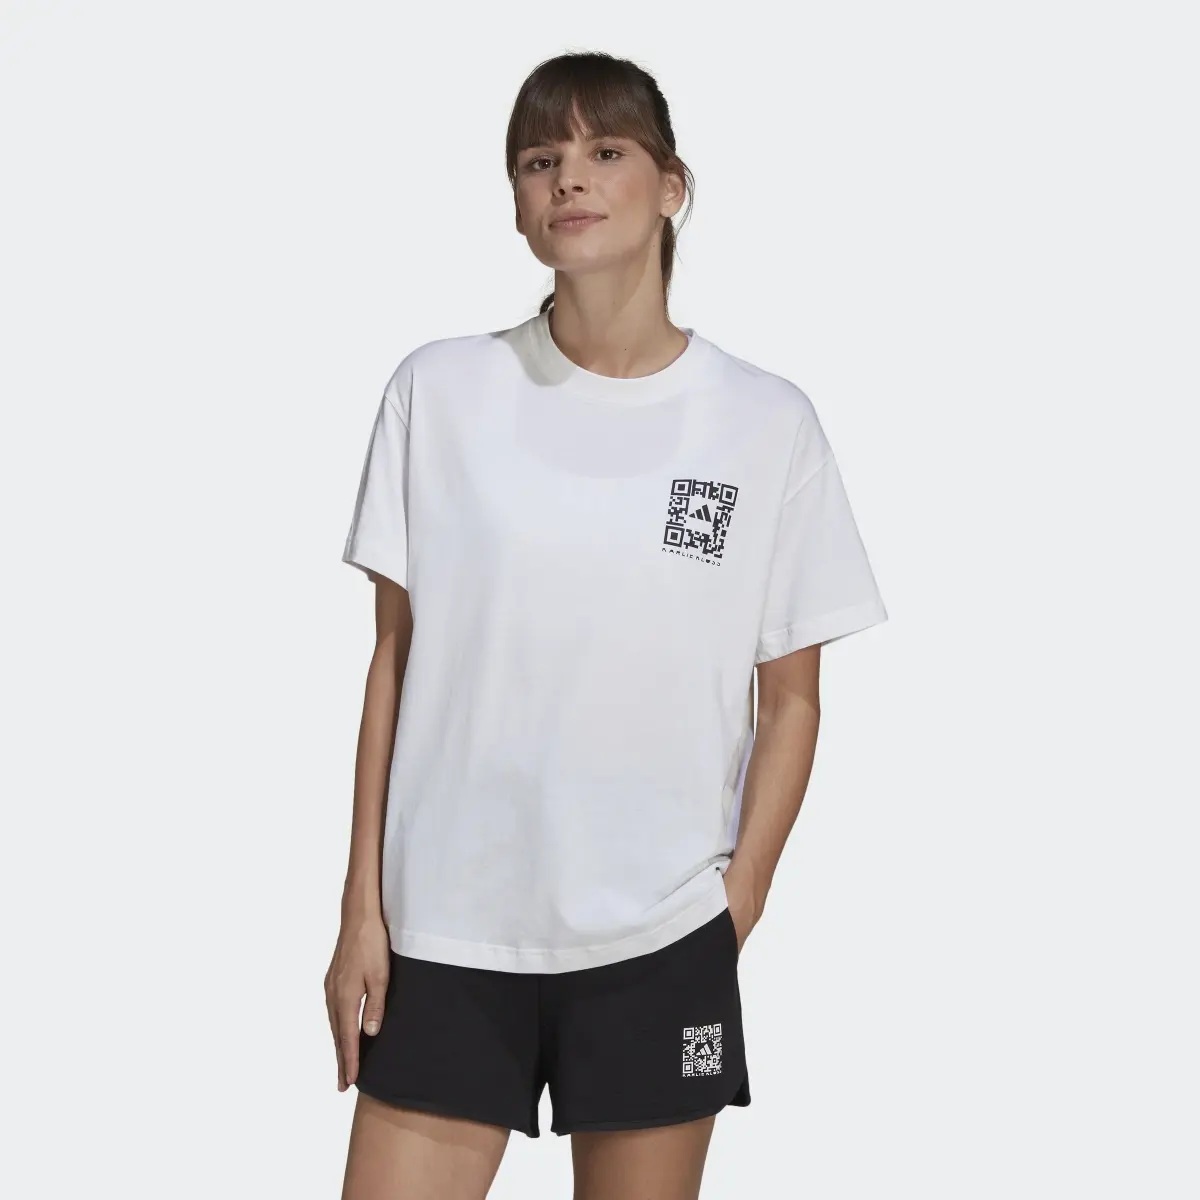 Adidas x Karlie Kloss Crop T-Shirt. 2